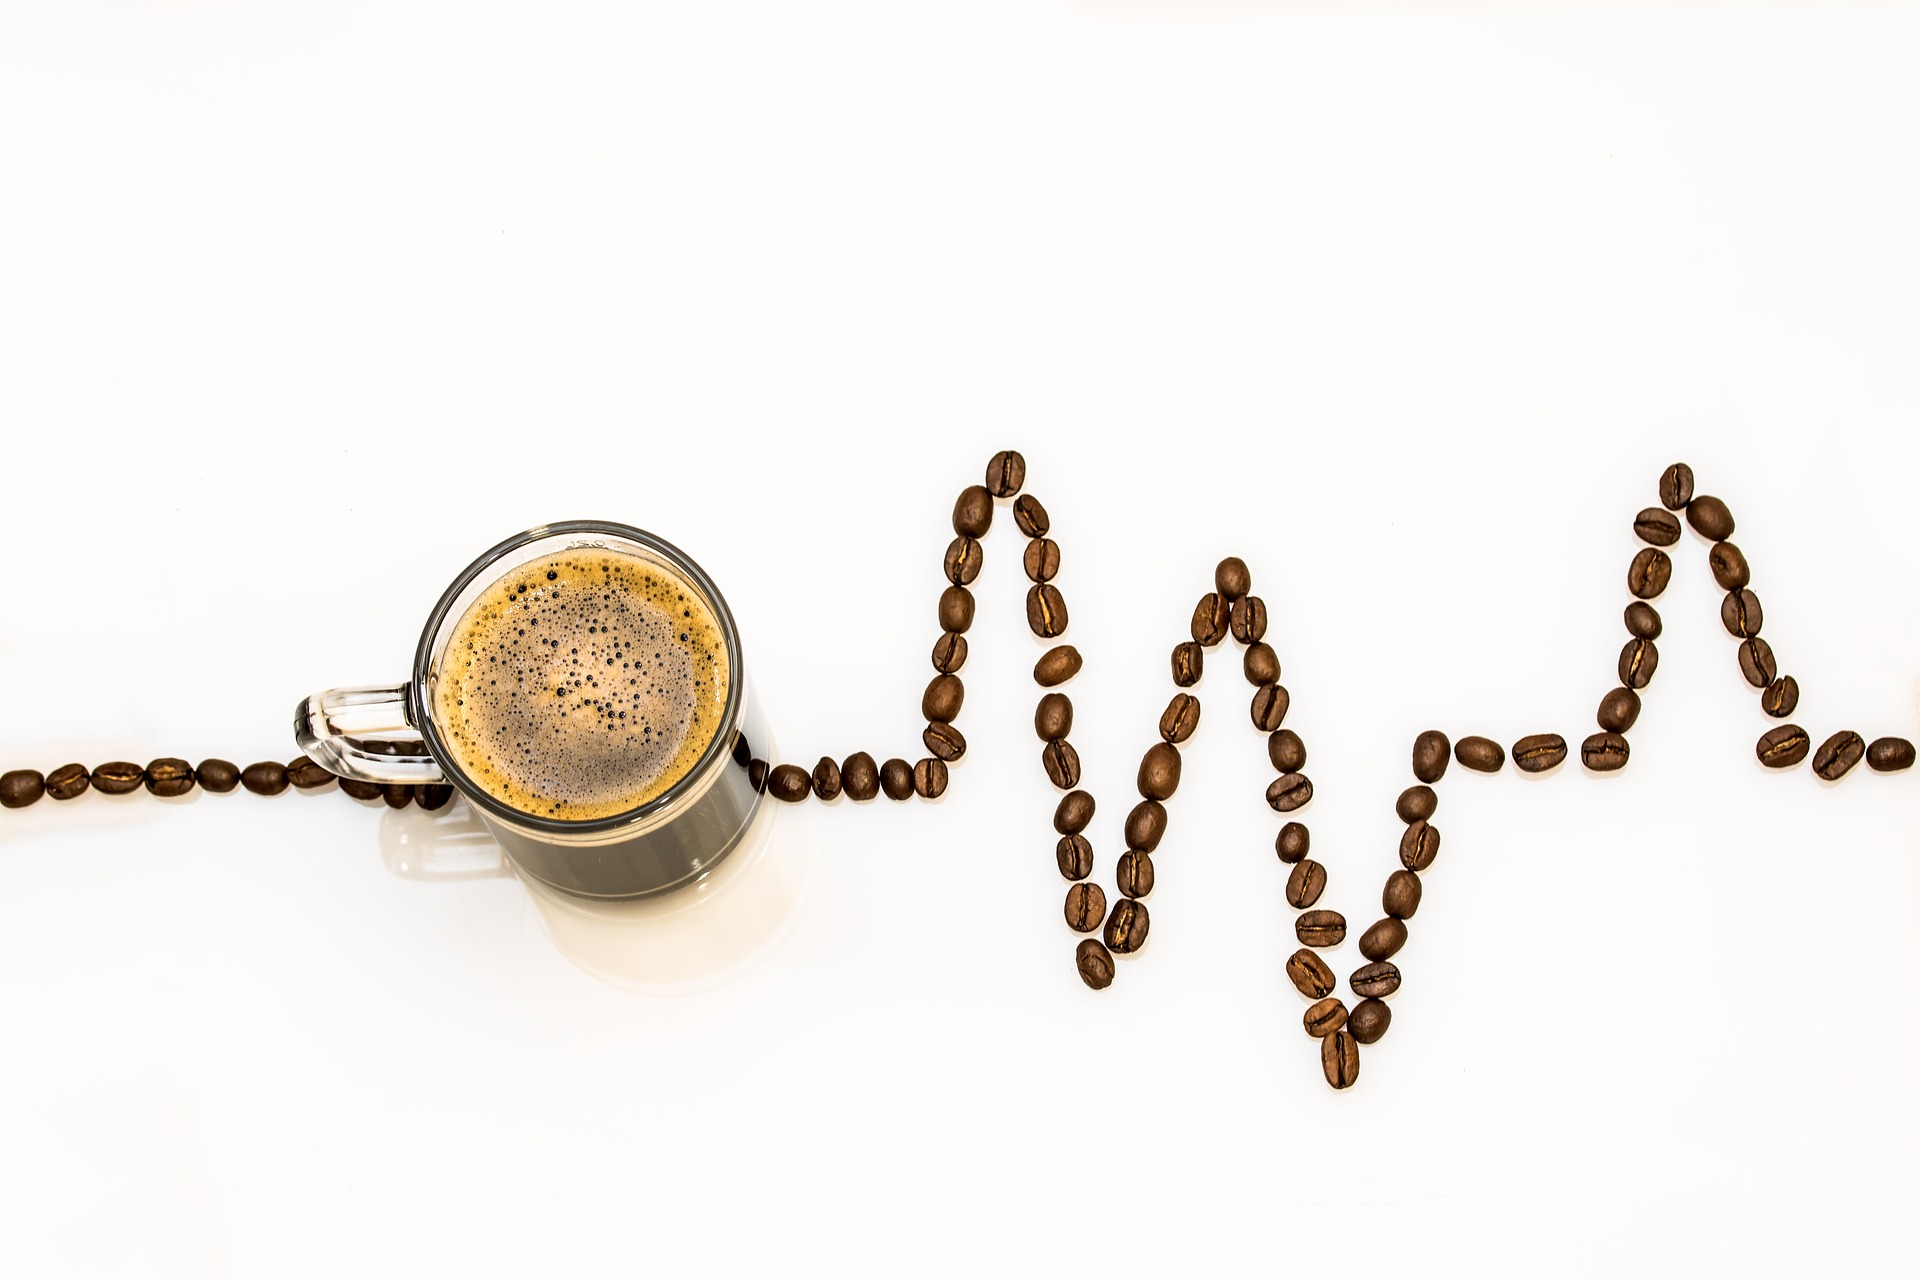 Τι σημαίνει τελικά μέτρια κατανάλωση καφεΐνης;